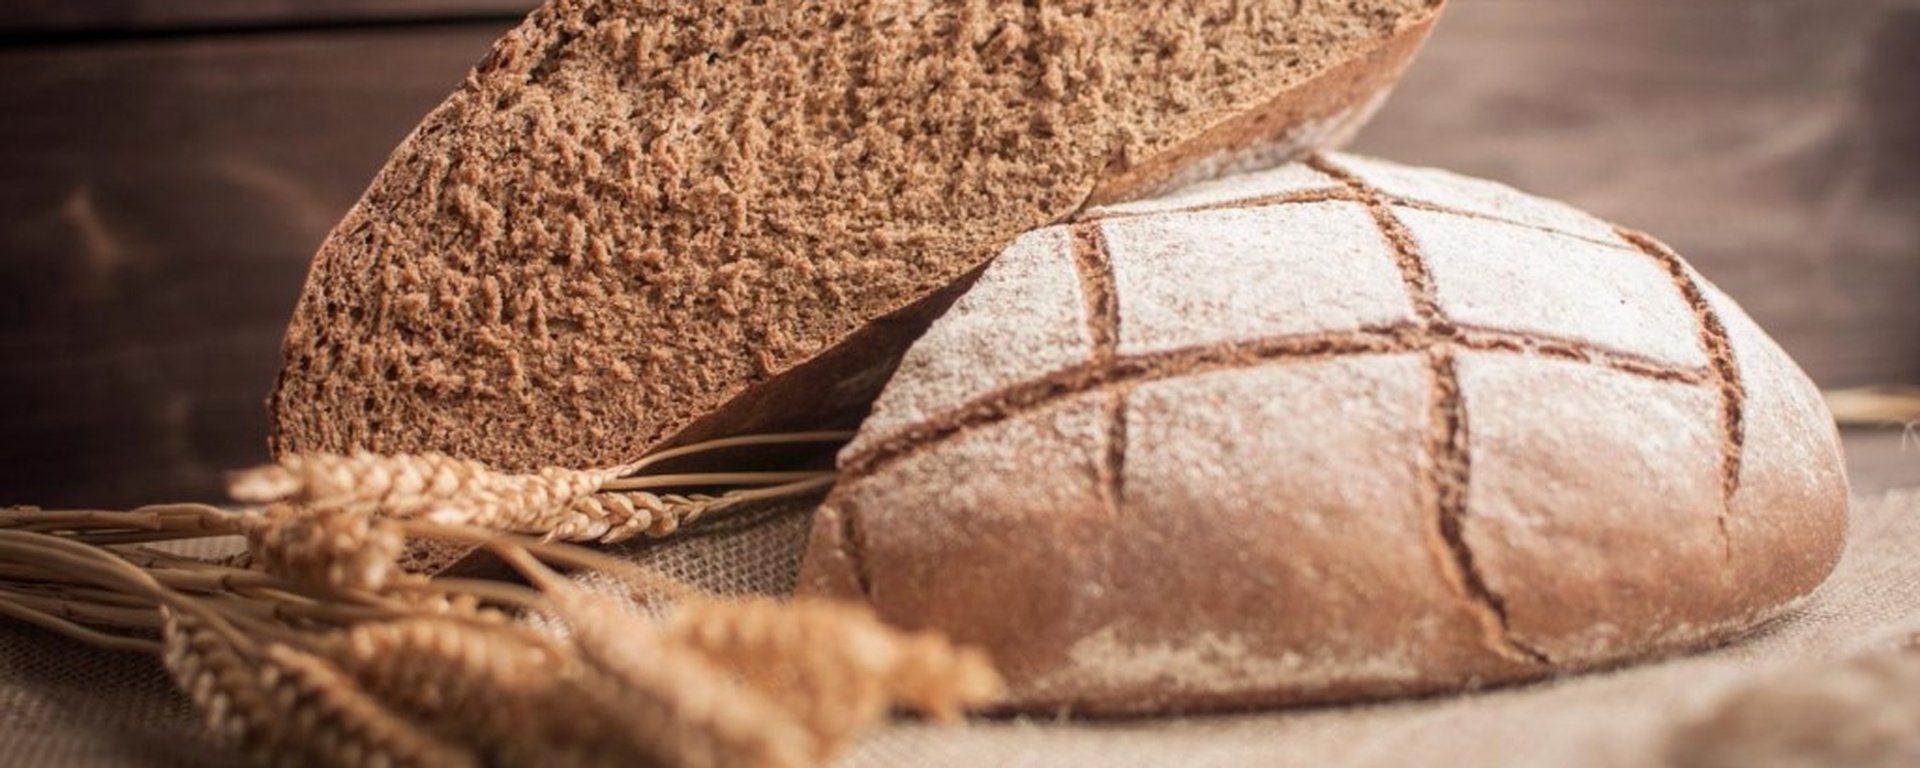 Ржаная или пшеничная мука. Хлеб. Хлебобулочные изделия в муке. Ржаной хлеб. Красивый подовый хлеб.